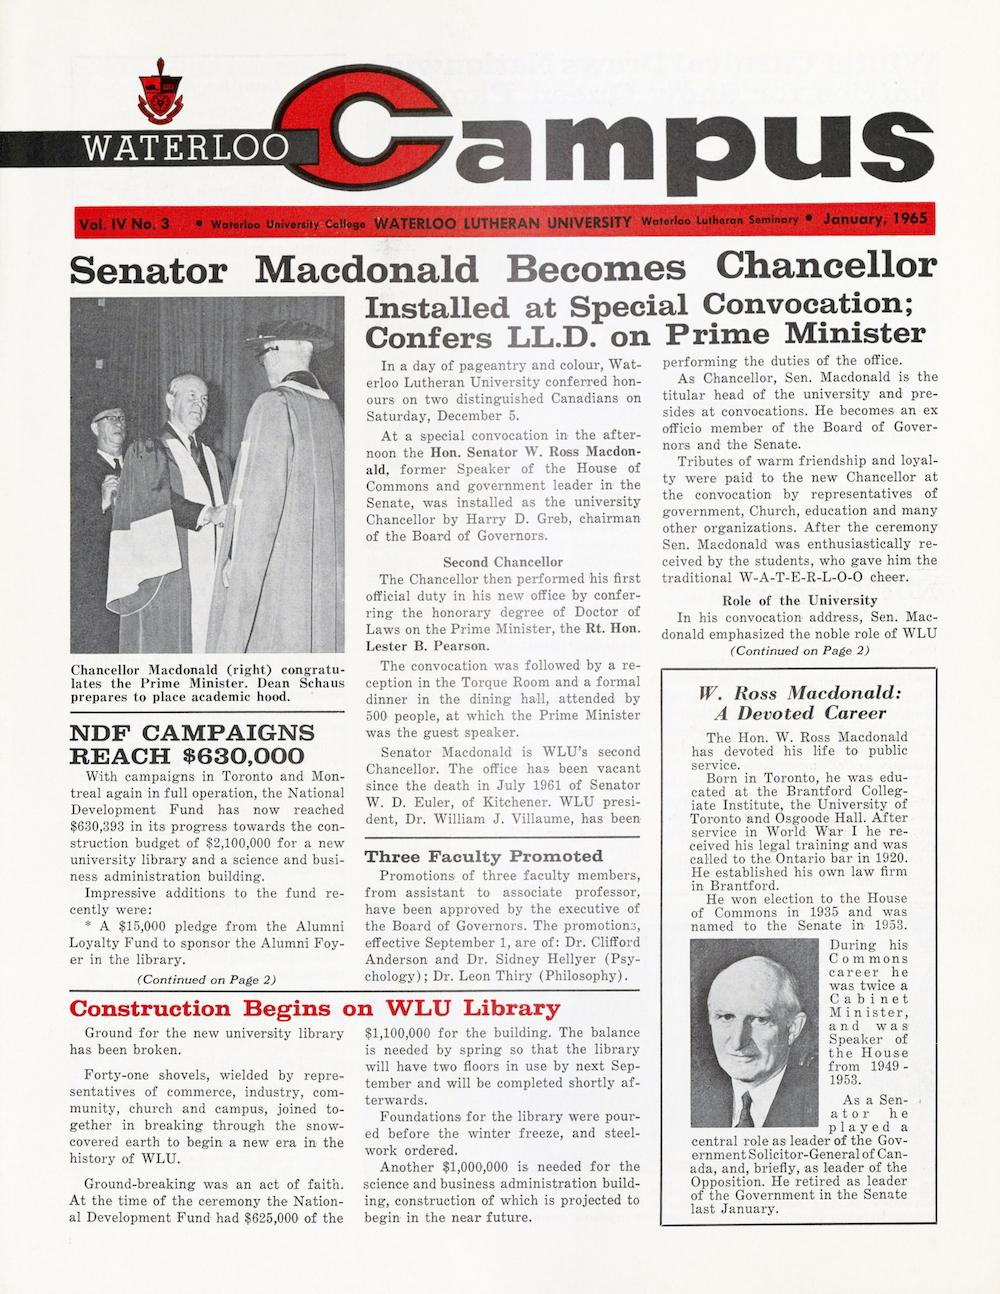 Campus magazine cover